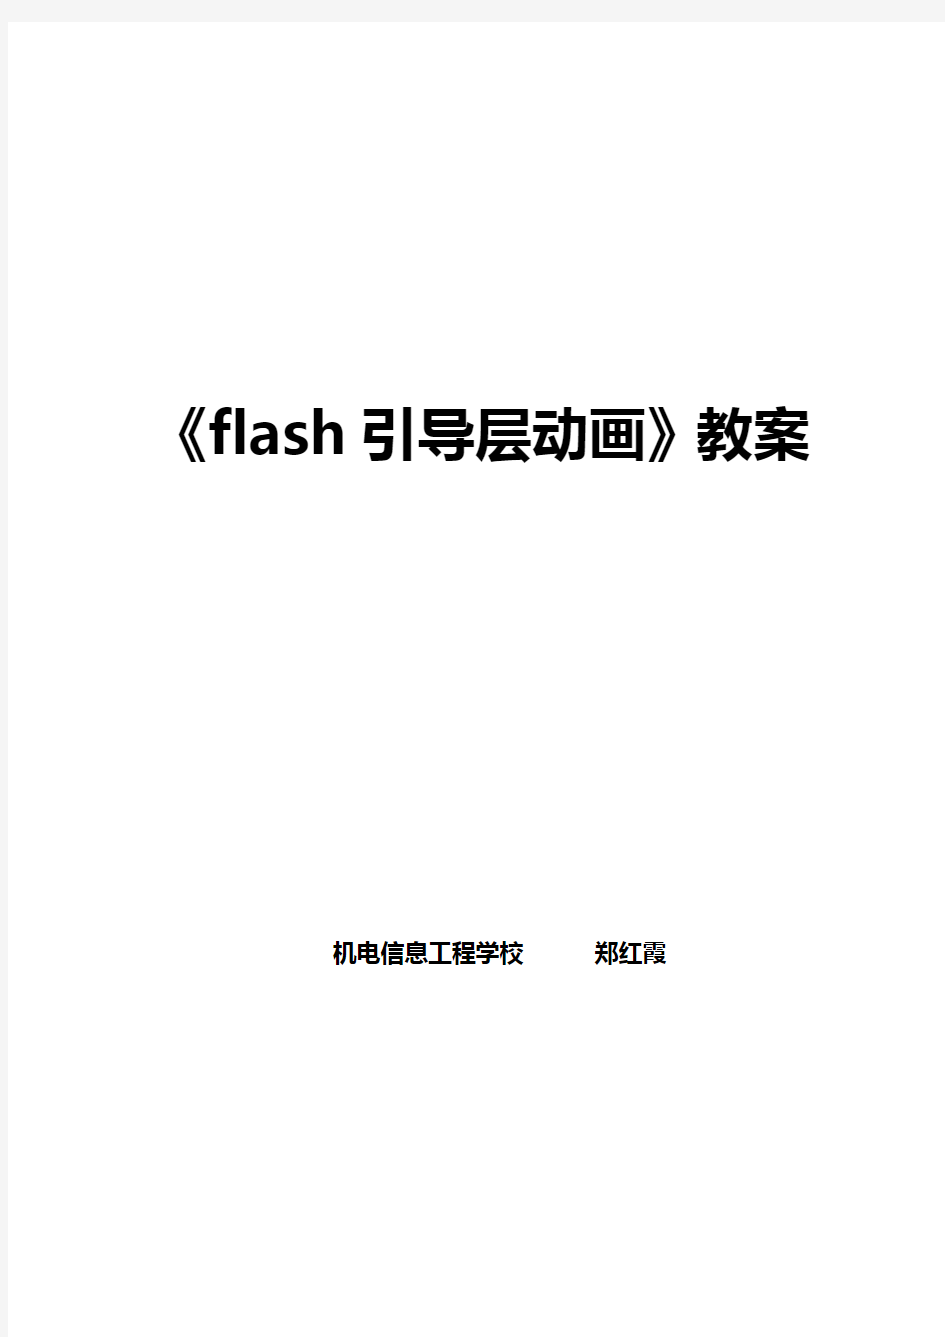 flash引导层动画教学设计